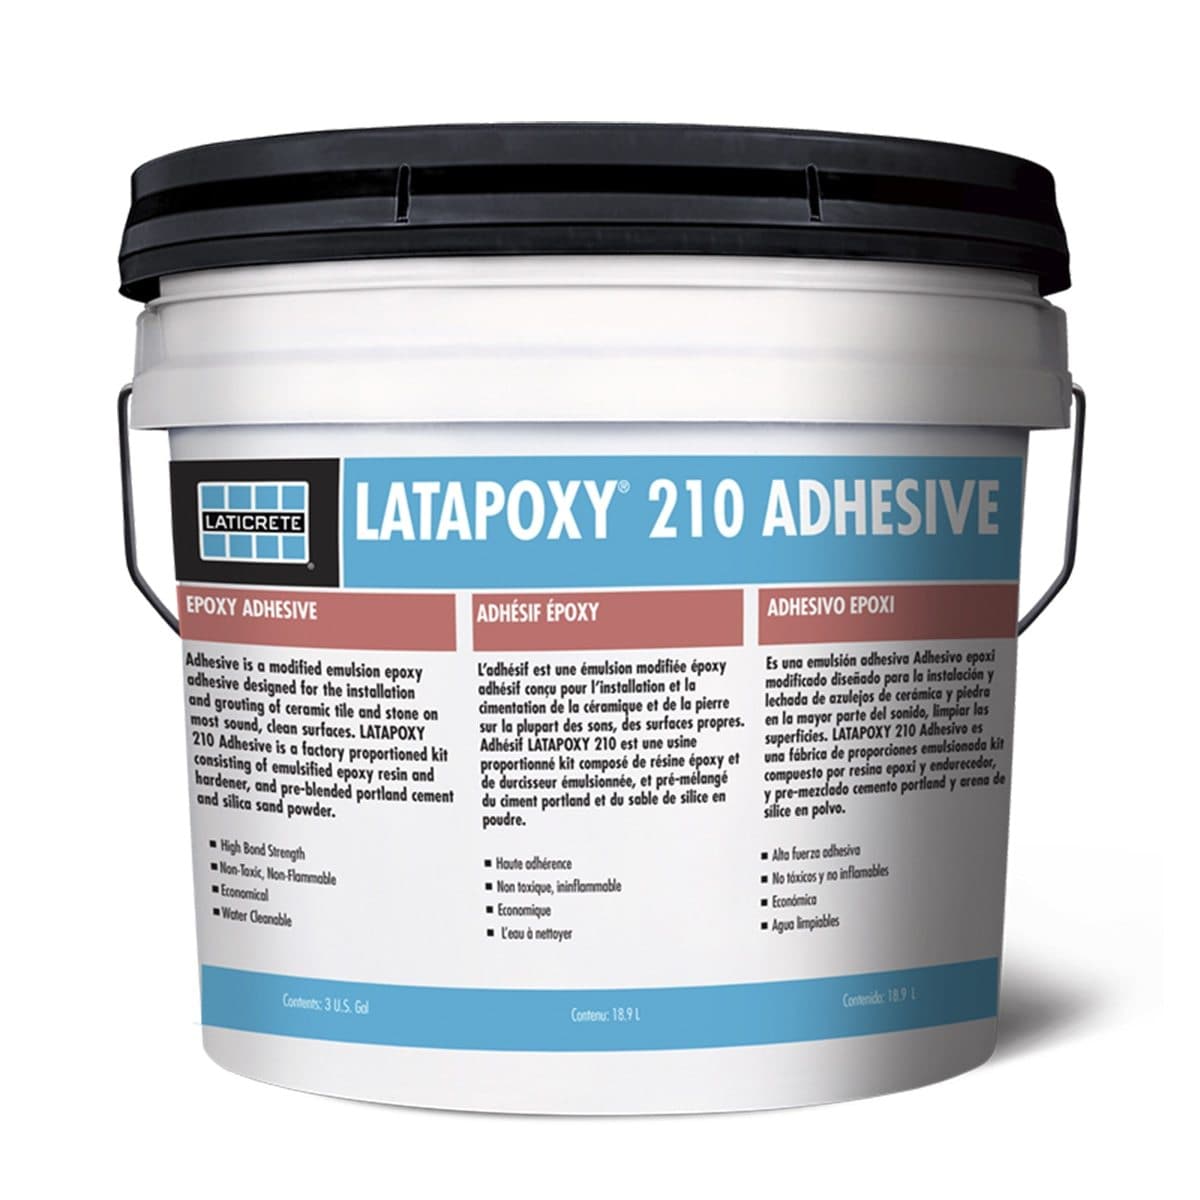 Latapoxy 210 Adhesive - Laticrete